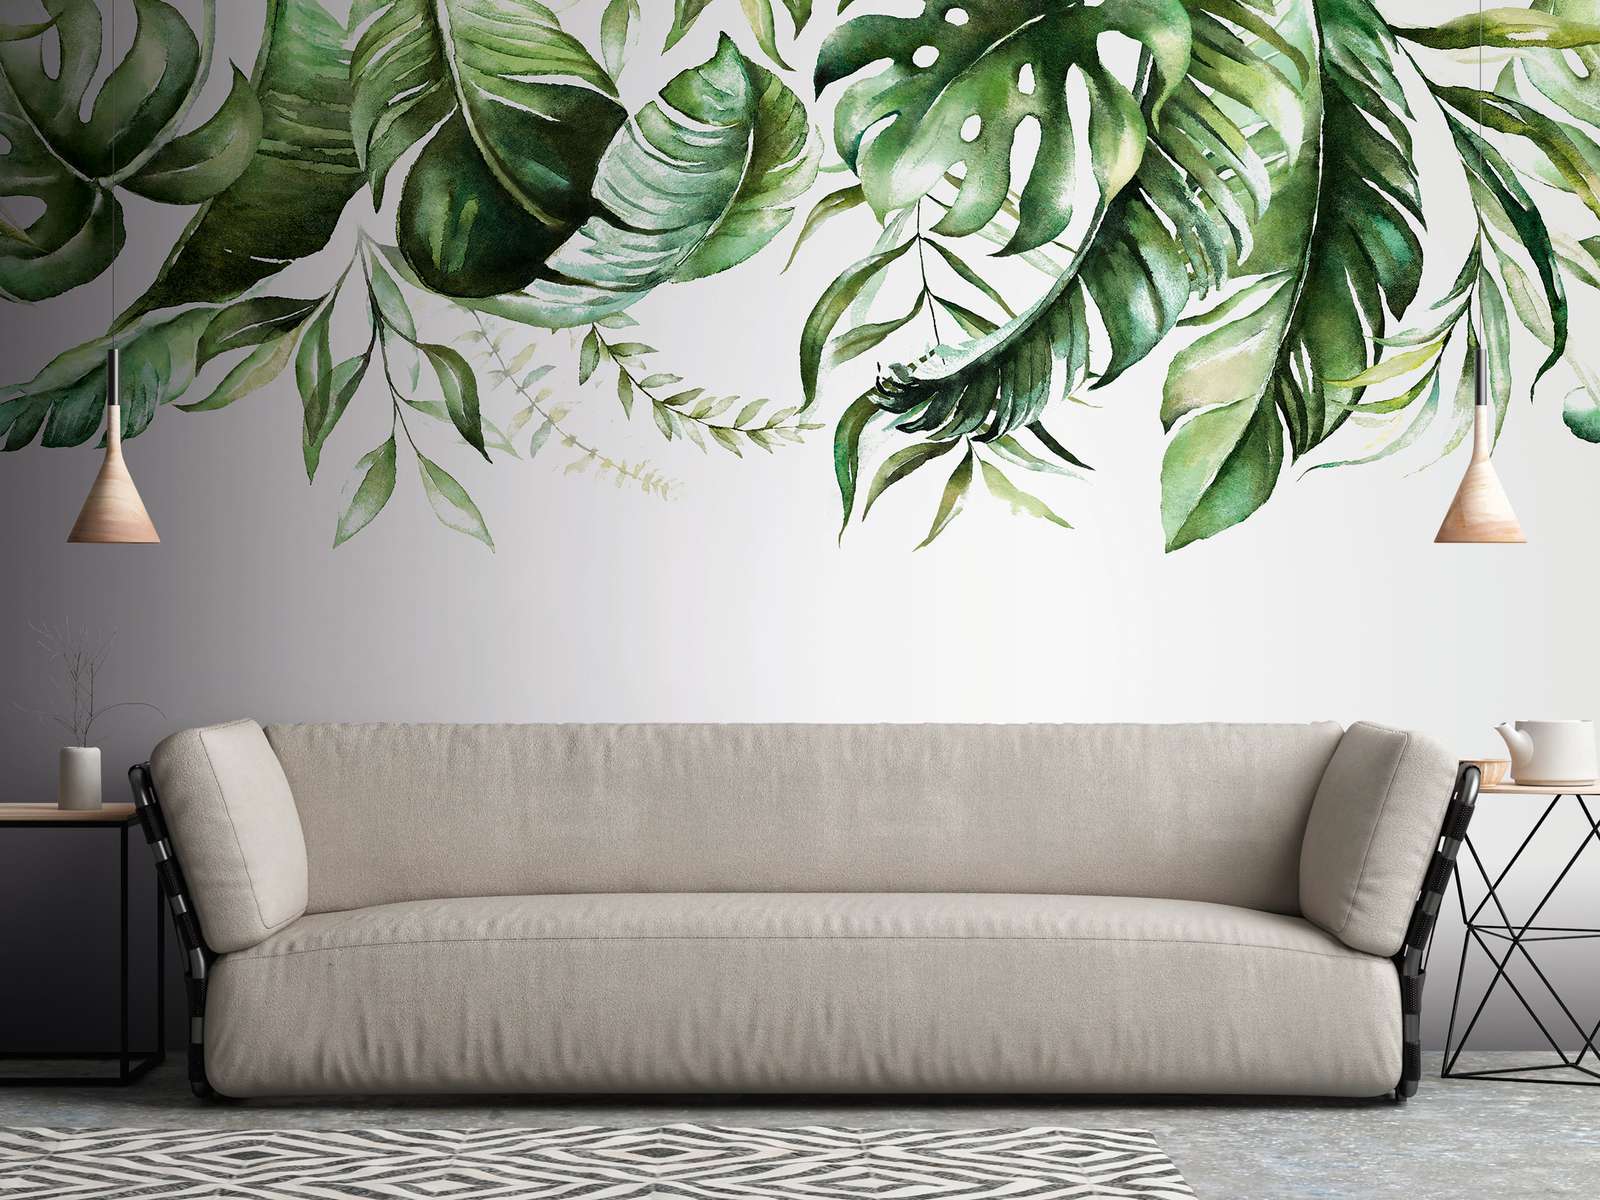             Fototapete mit tropischen Blätterranken auf einer Wand – Grün, Weiß
        